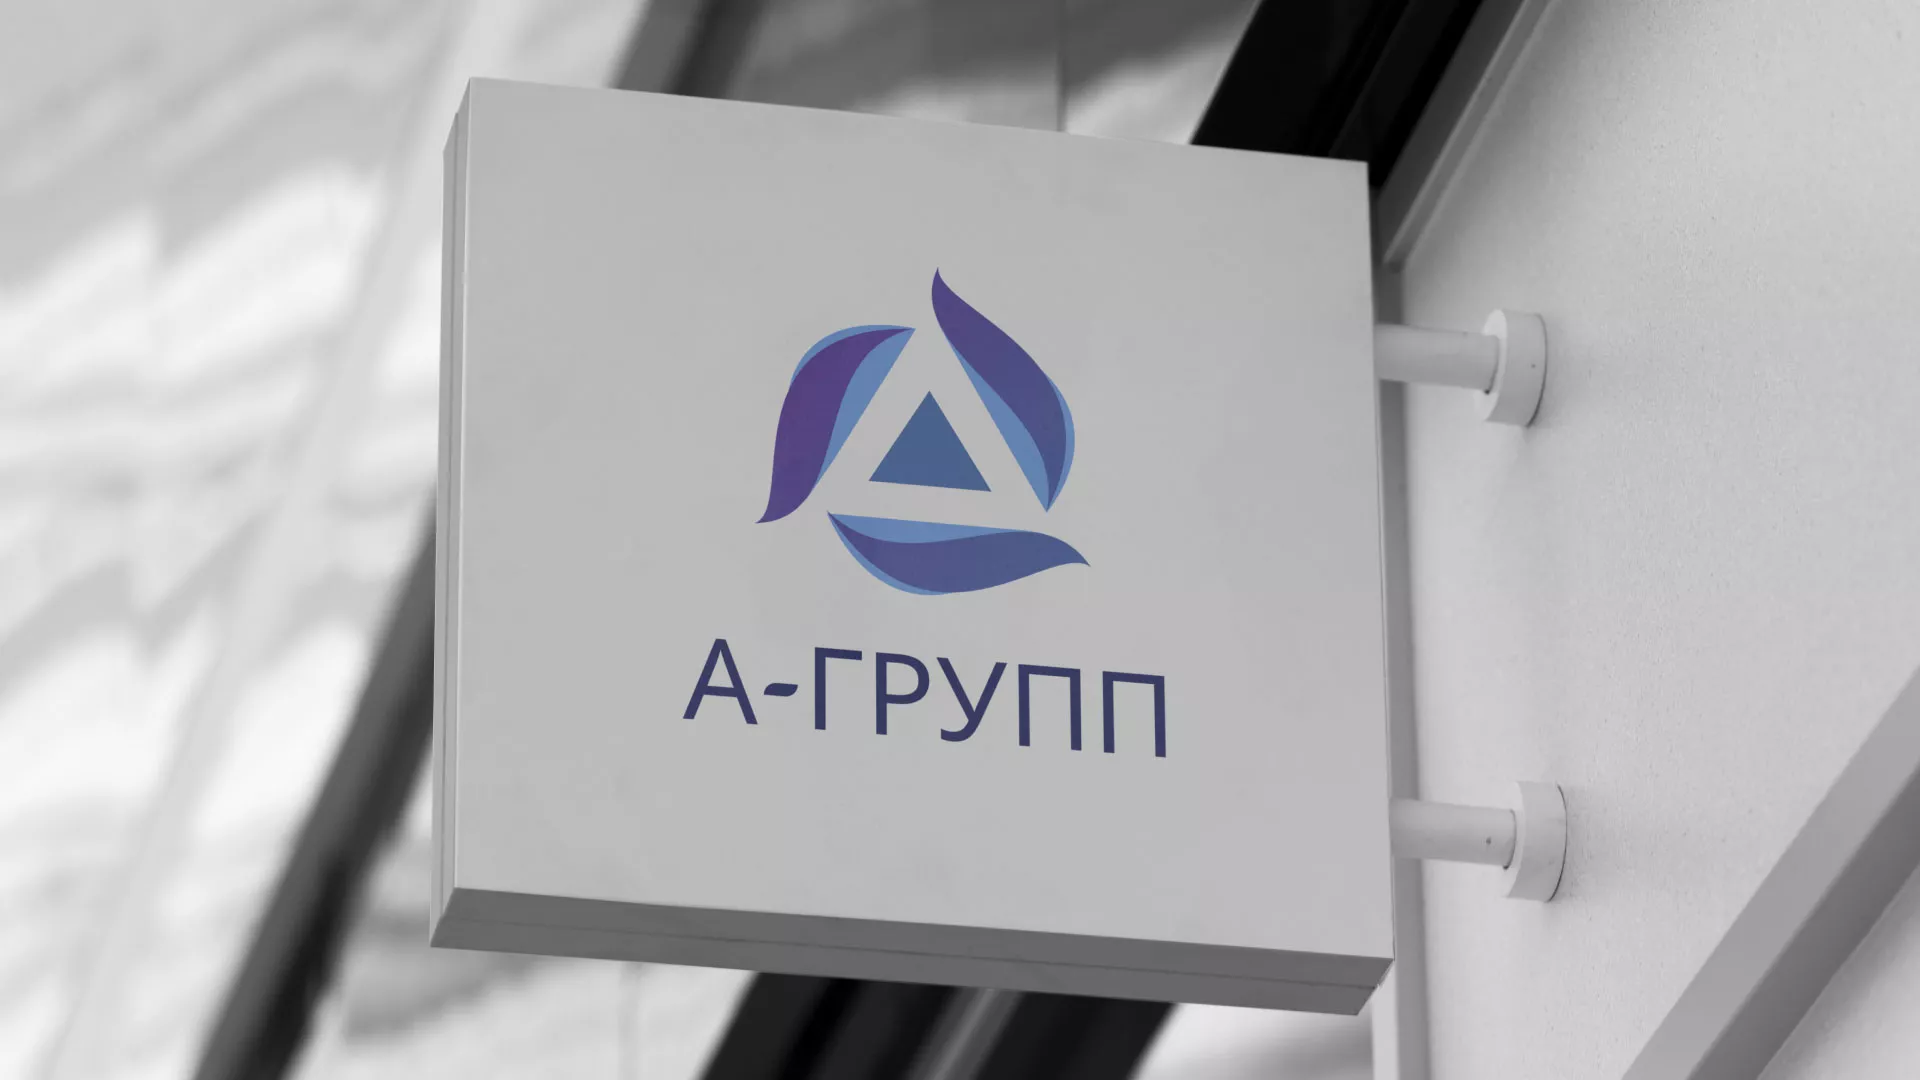 Создание логотипа компании «А-ГРУПП» в Выксе